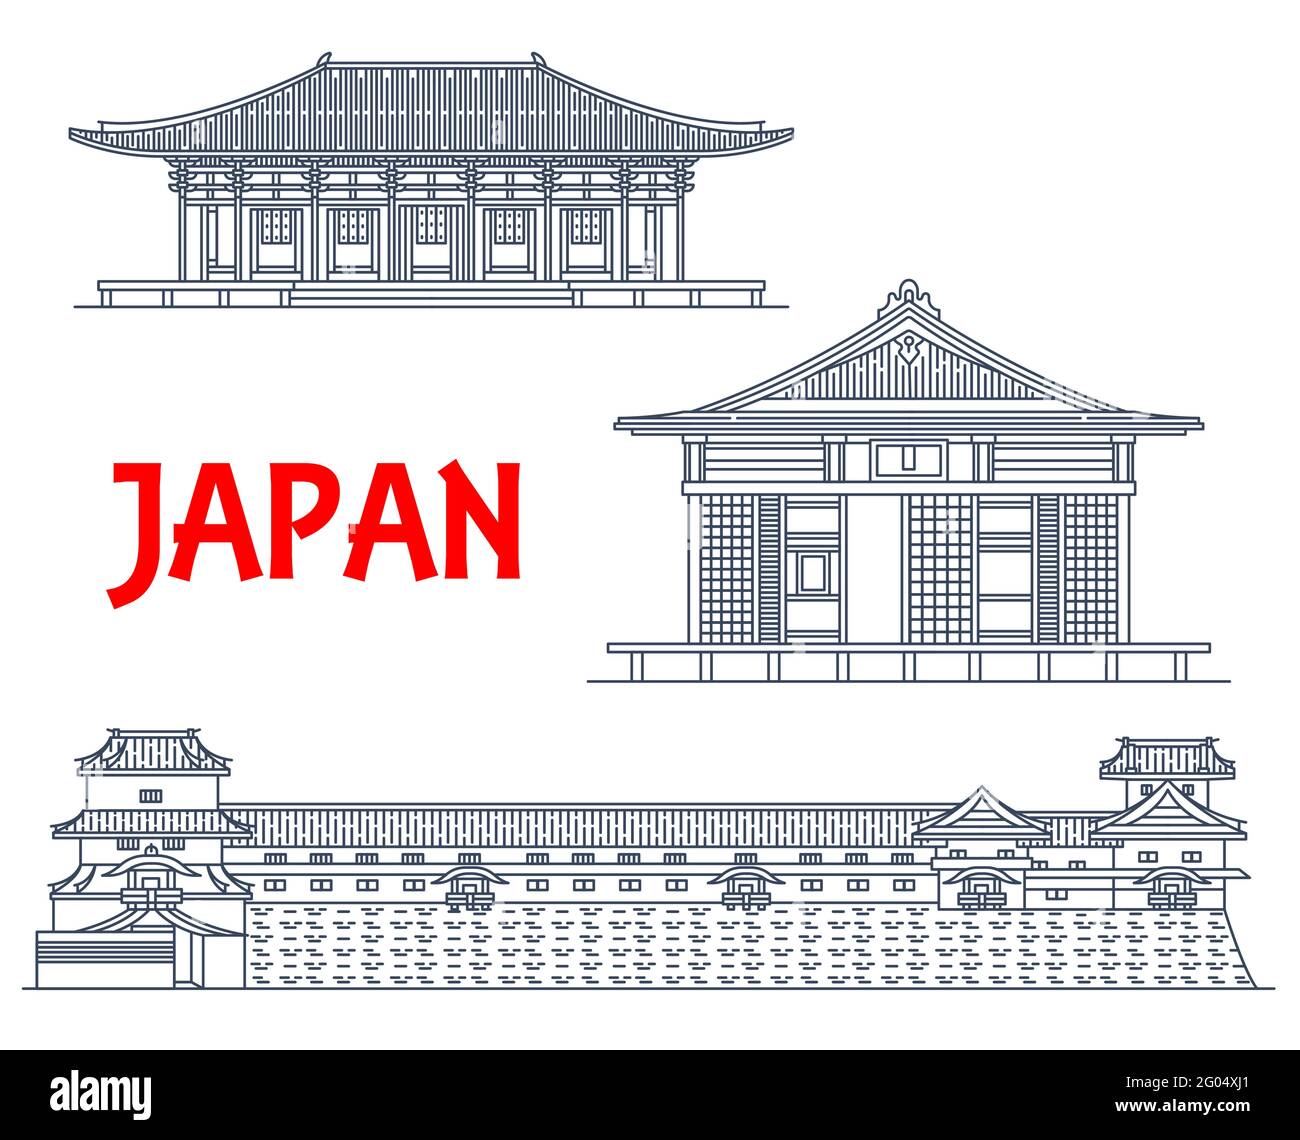 Luoghi di interesse giapponesi, edifici di templi, architettura Buddha, icone di linee vettoriali. I famosi santuari Shintoos giapponesi Toshodai-ji e il tempio Fuku-ji Illustrazione Vettoriale